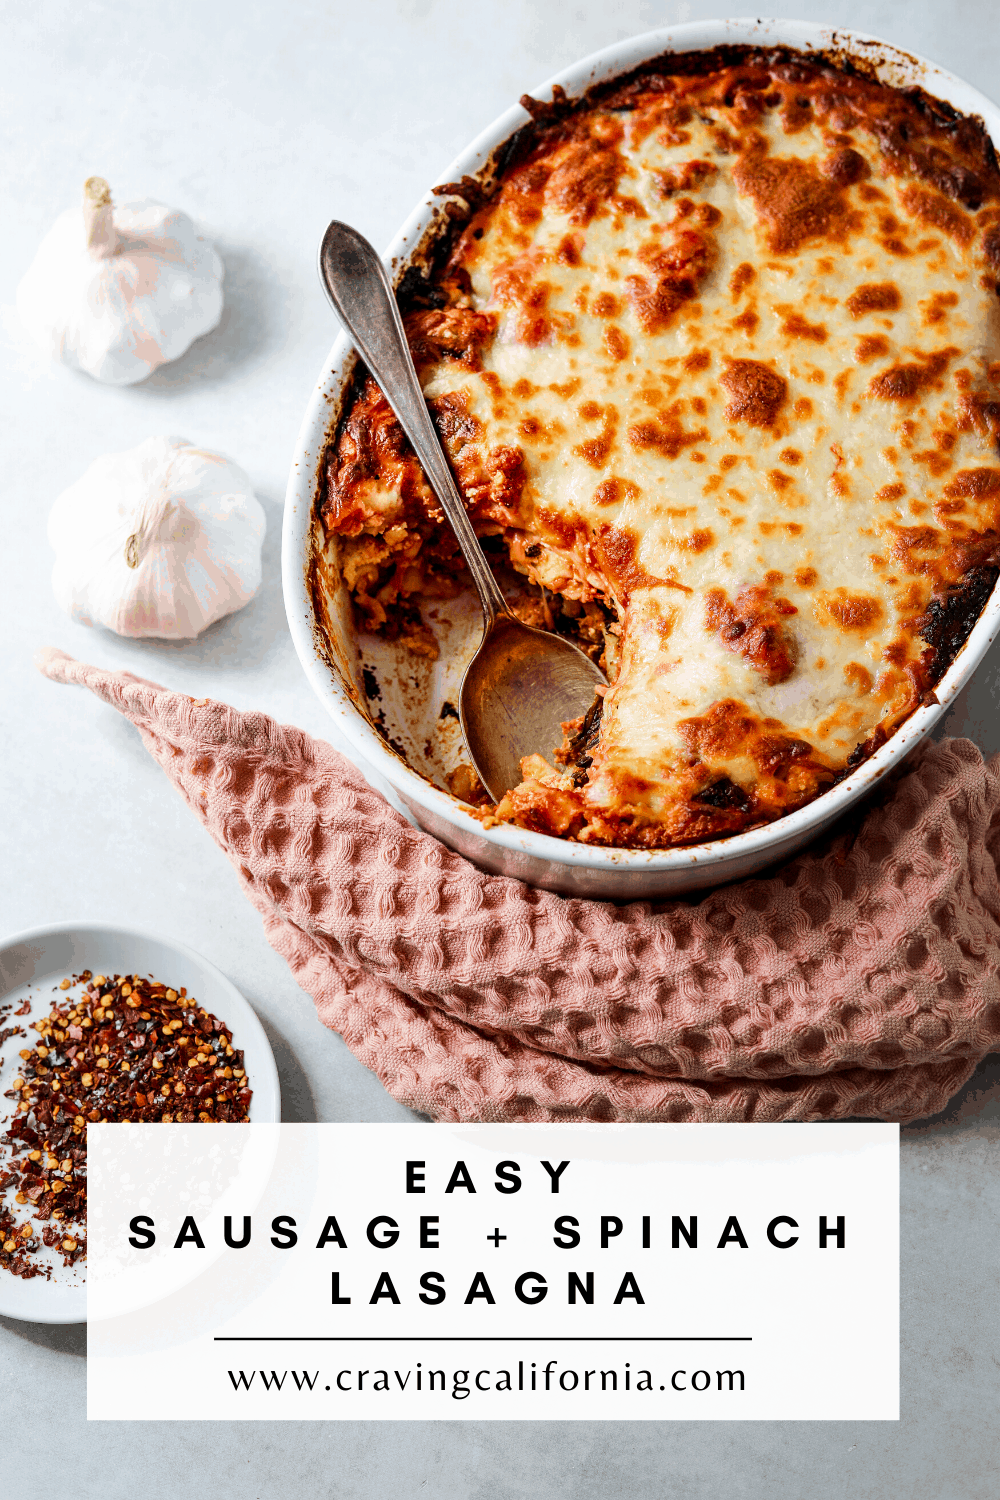 Easy Sausage + Spinach Lasagna - Craving California